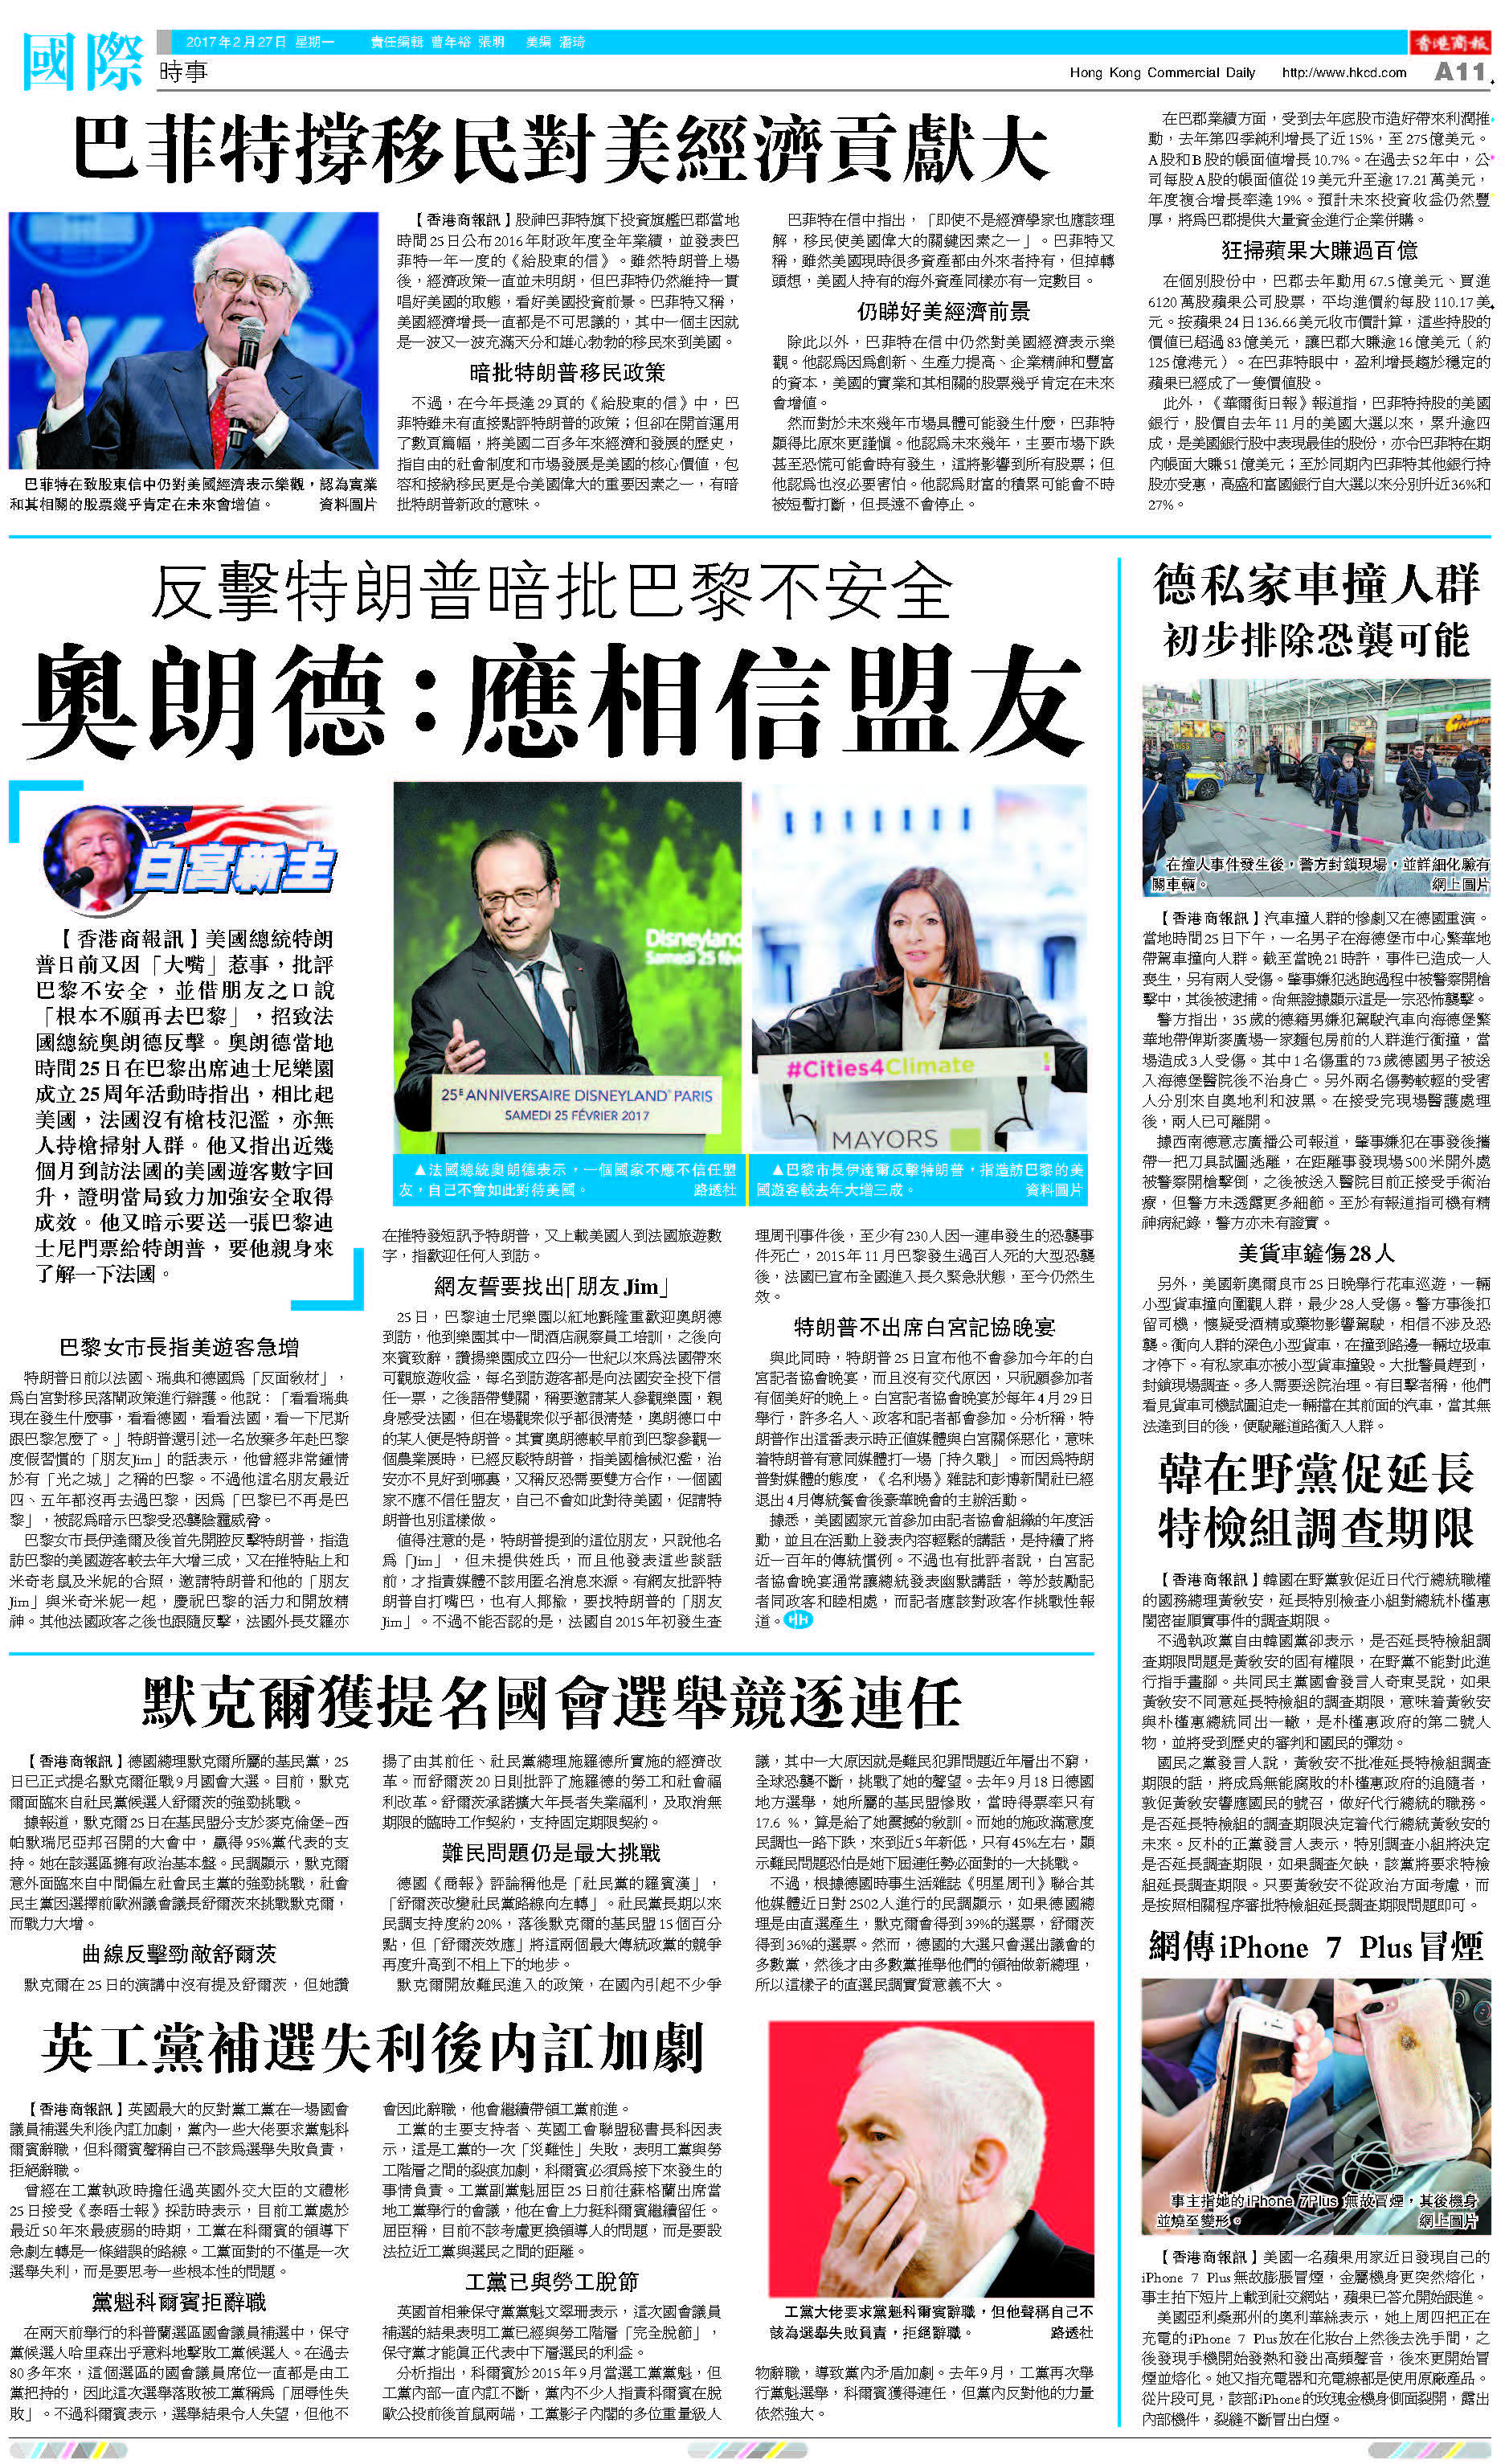 2月27日香港商報A11版